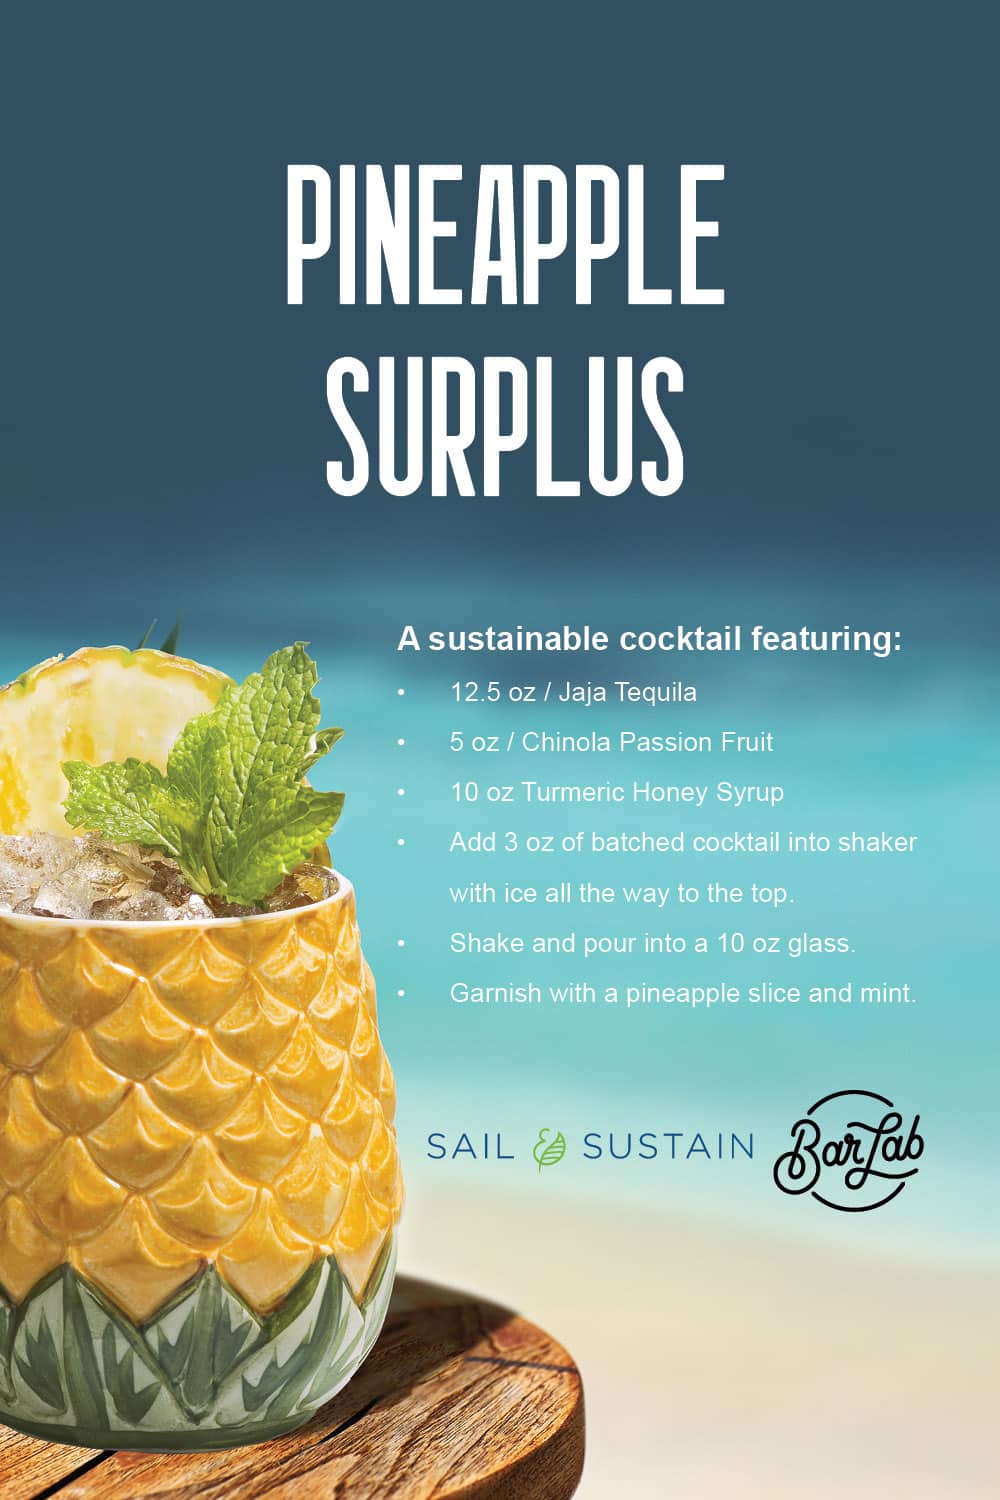 Norwegian Cruise Line Pineapple Surplus Cocktail Recipe